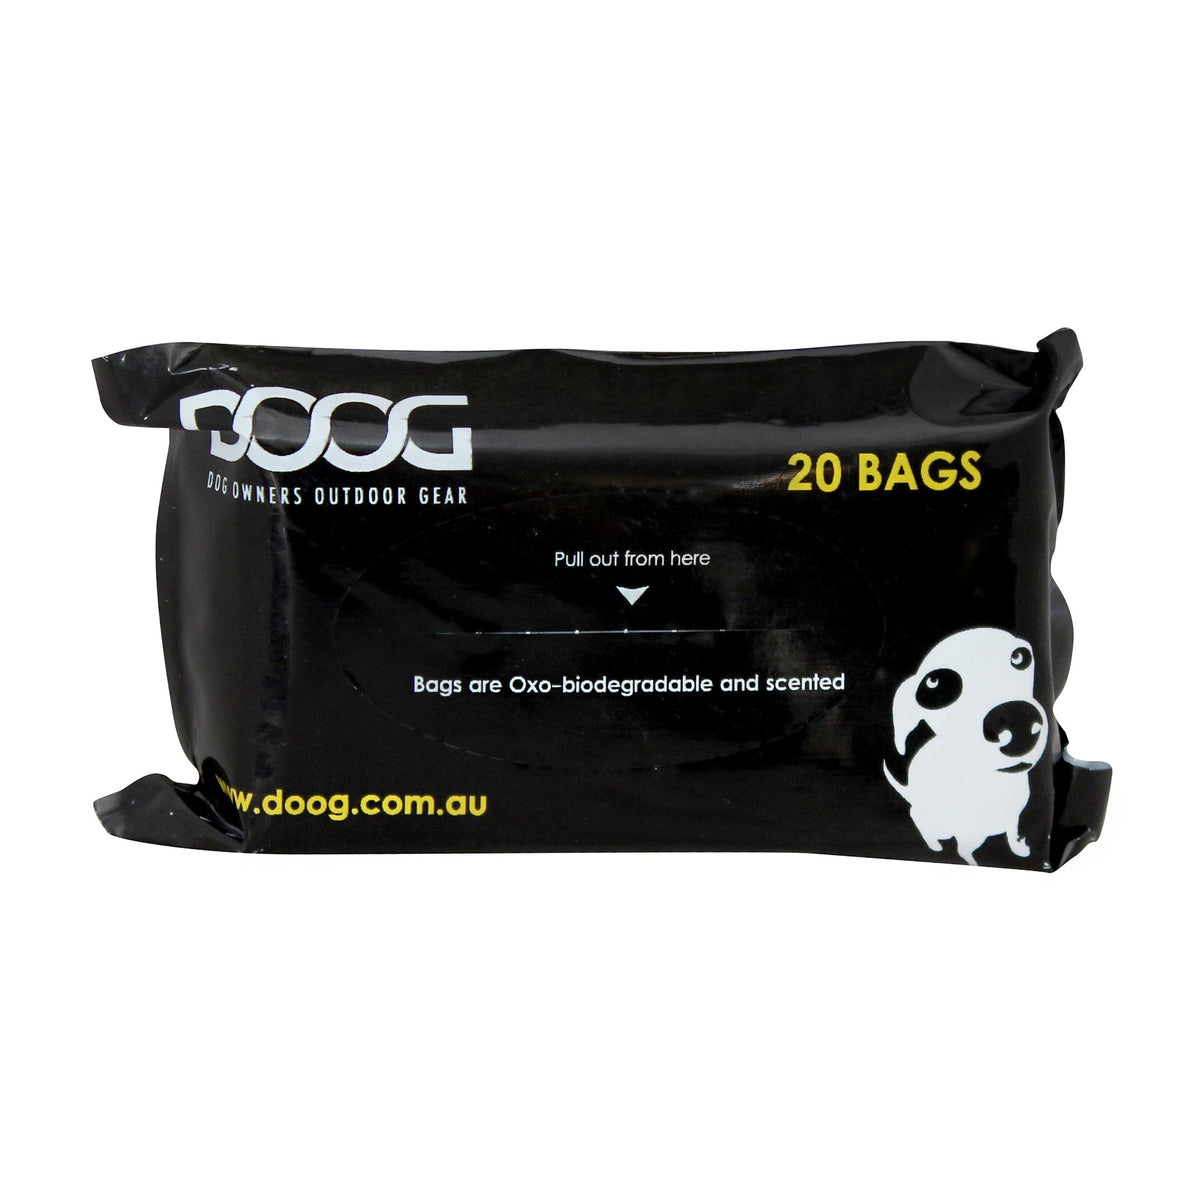 DOOG Walkie Bag Tidy Bag Refills 60&#39;s